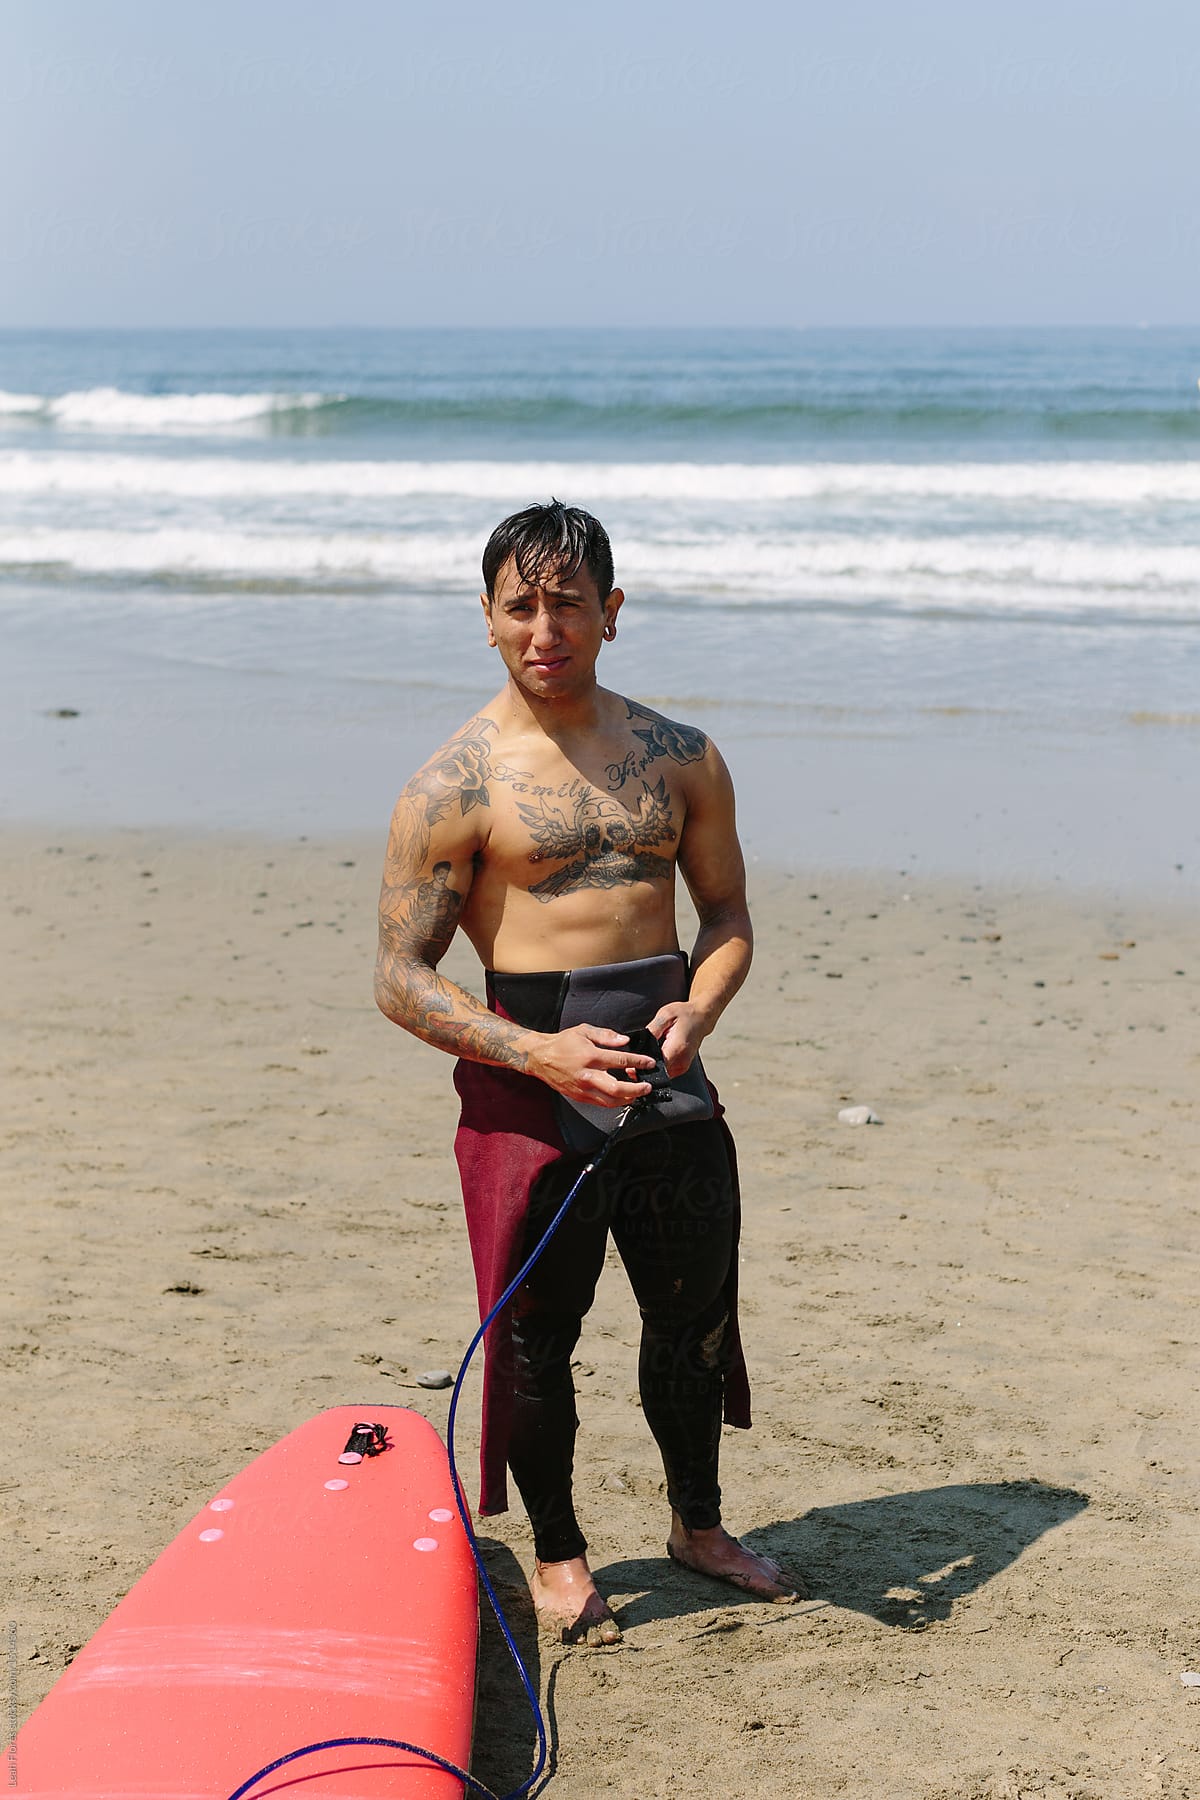 Tattooed surfer